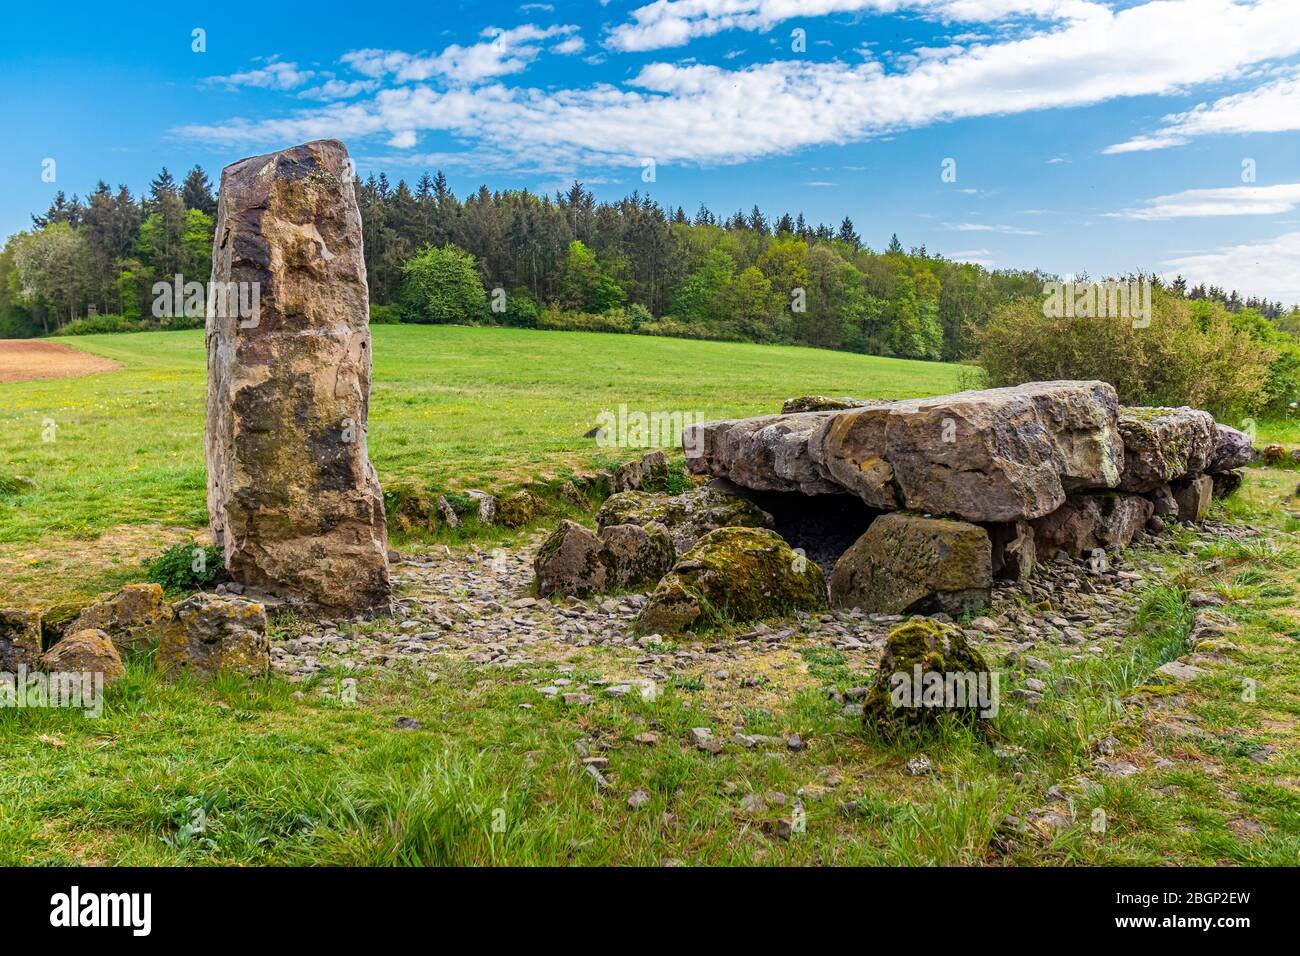 Der Heilige Stein von Muschenheim, ein prähistorisches Megalithgrab aus der Jungsteinzeit, auf einem Hügel bei lich-Muschenheim, Hessen, Deutschland Stockfoto